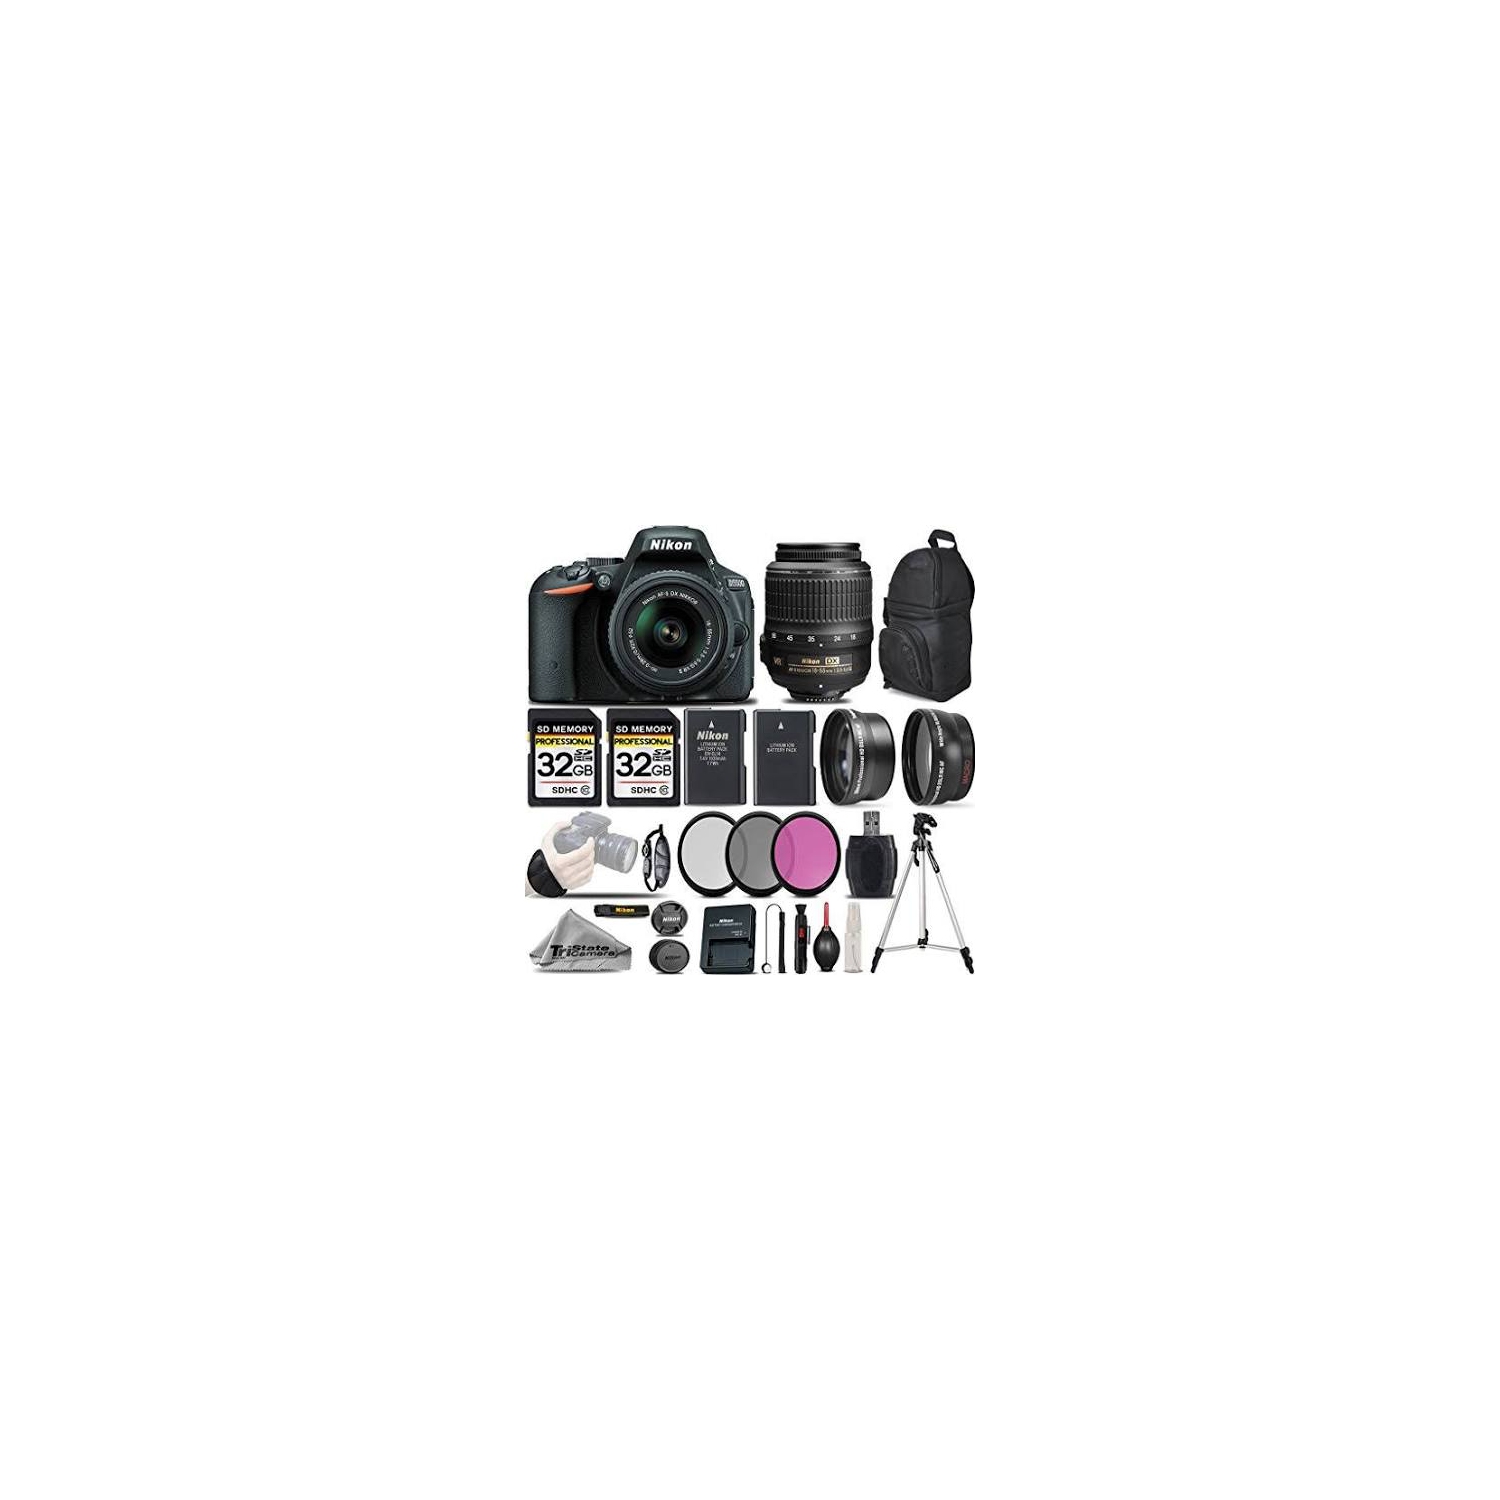 Nikon D5500 Digital SLR Camera +3 Lens 18-55mm VR - 64GB Great Saving Full Kit - US Version w/ Seller Warranty